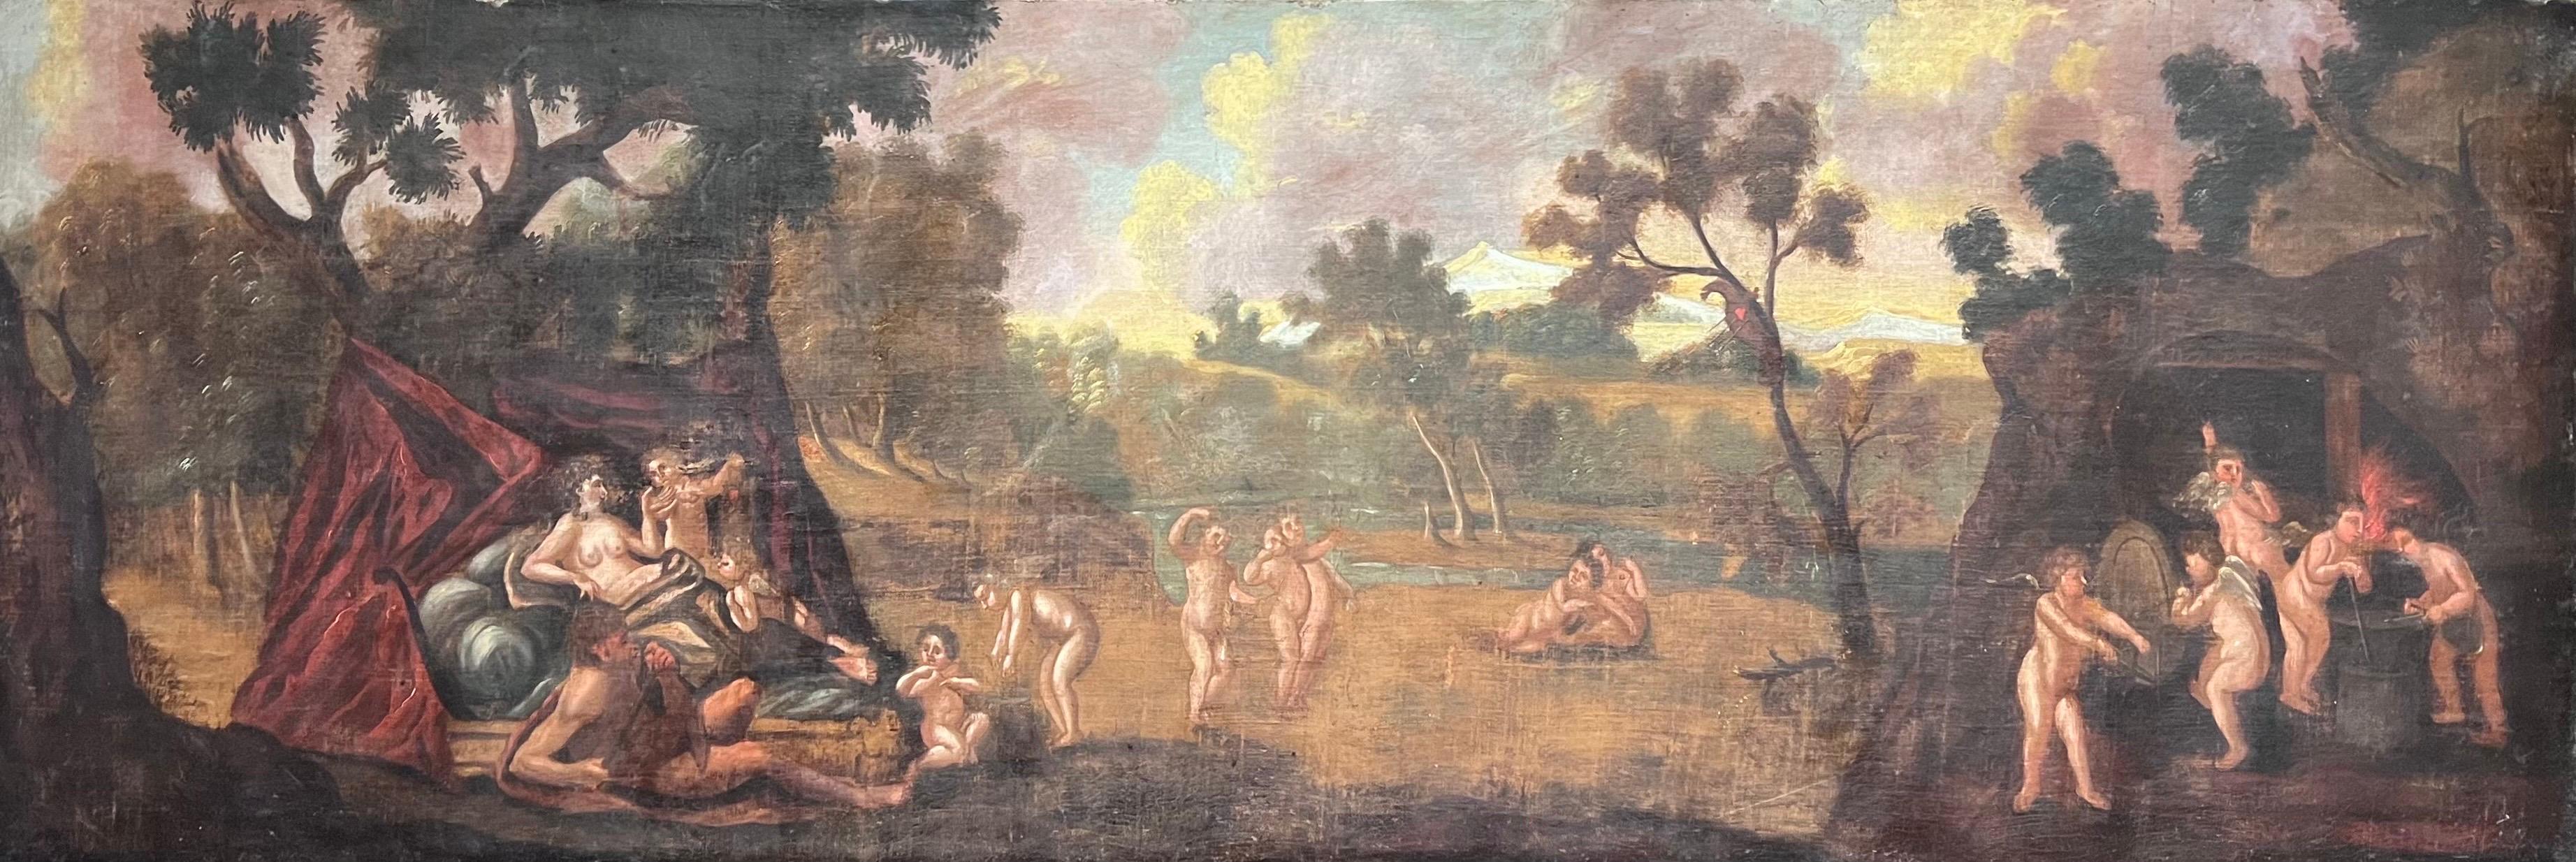 Enorme pintura al óleo del siglo XVII Diana y Cupidos en un paisaje panorámico